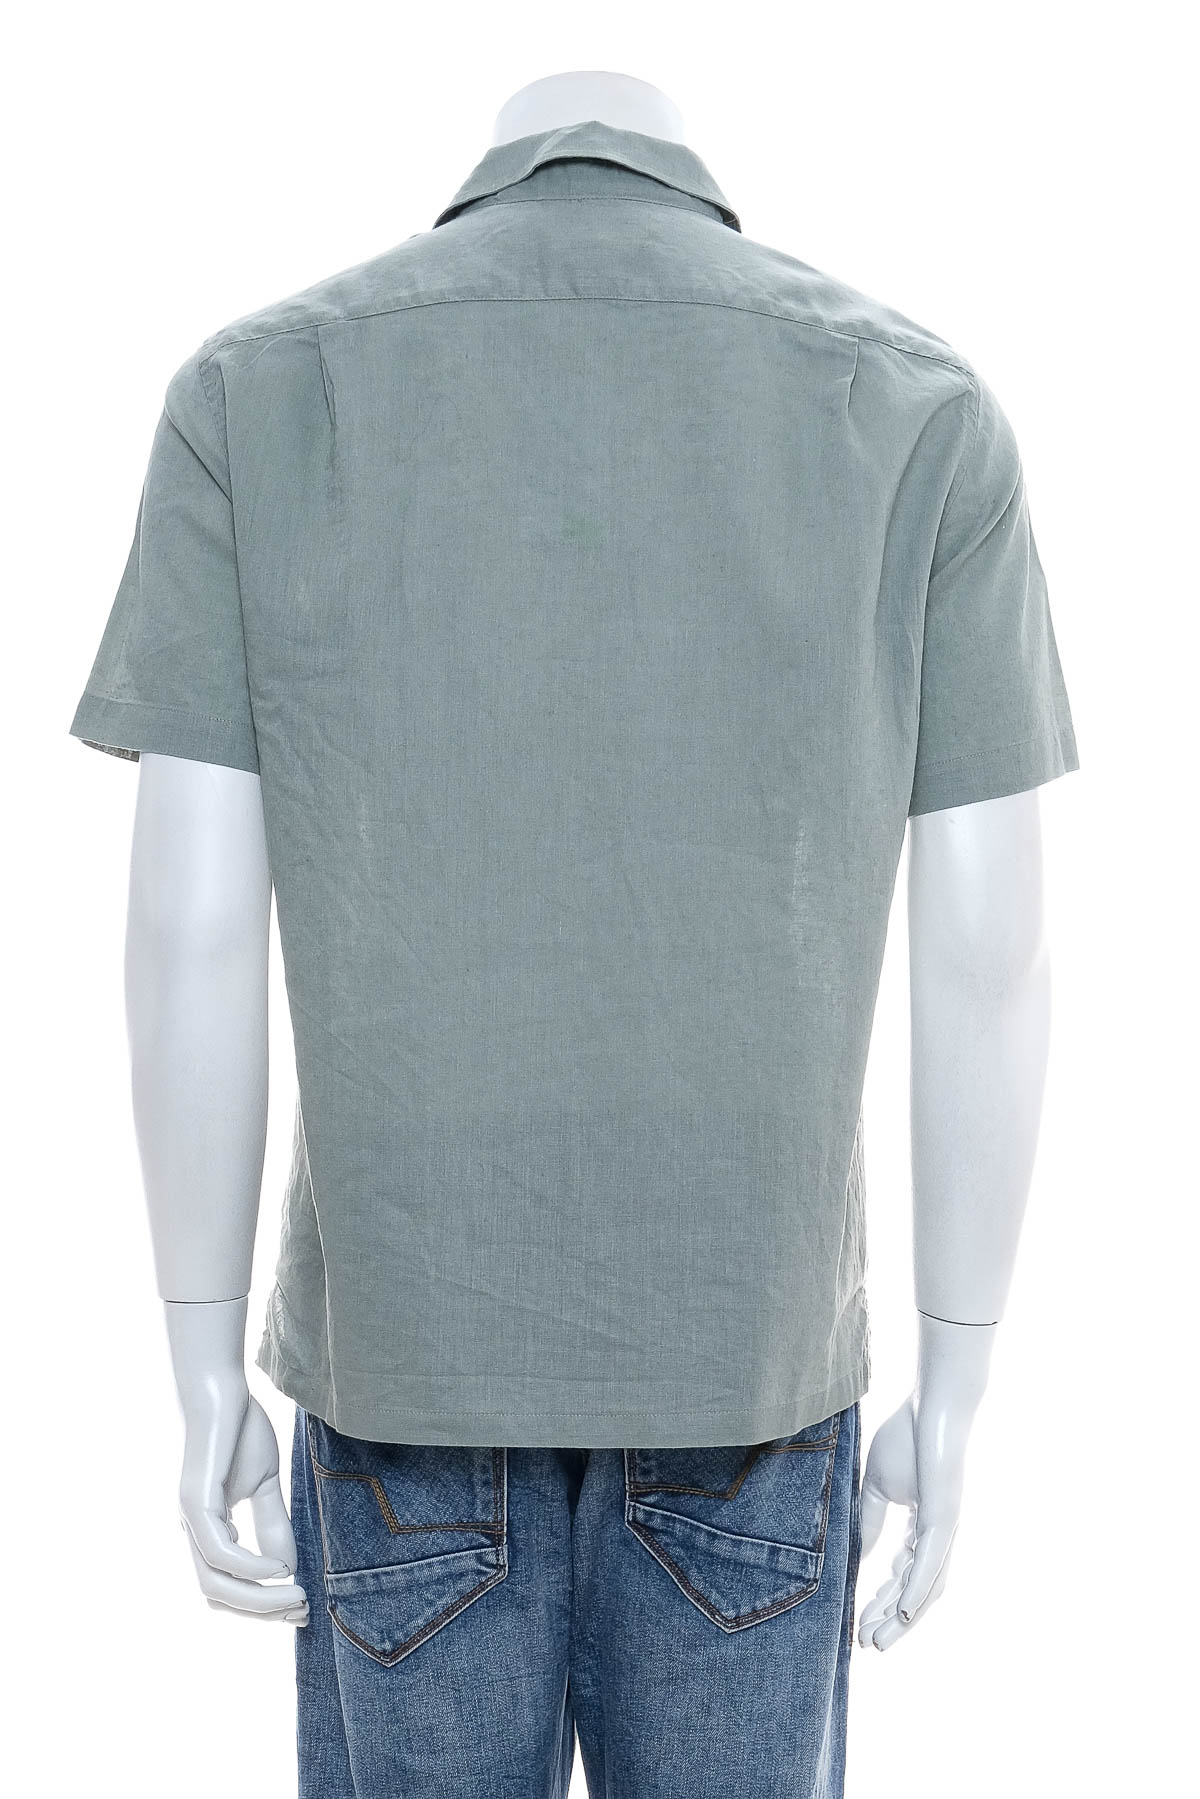 Ανδρικό πουκάμισο - H&M - 1